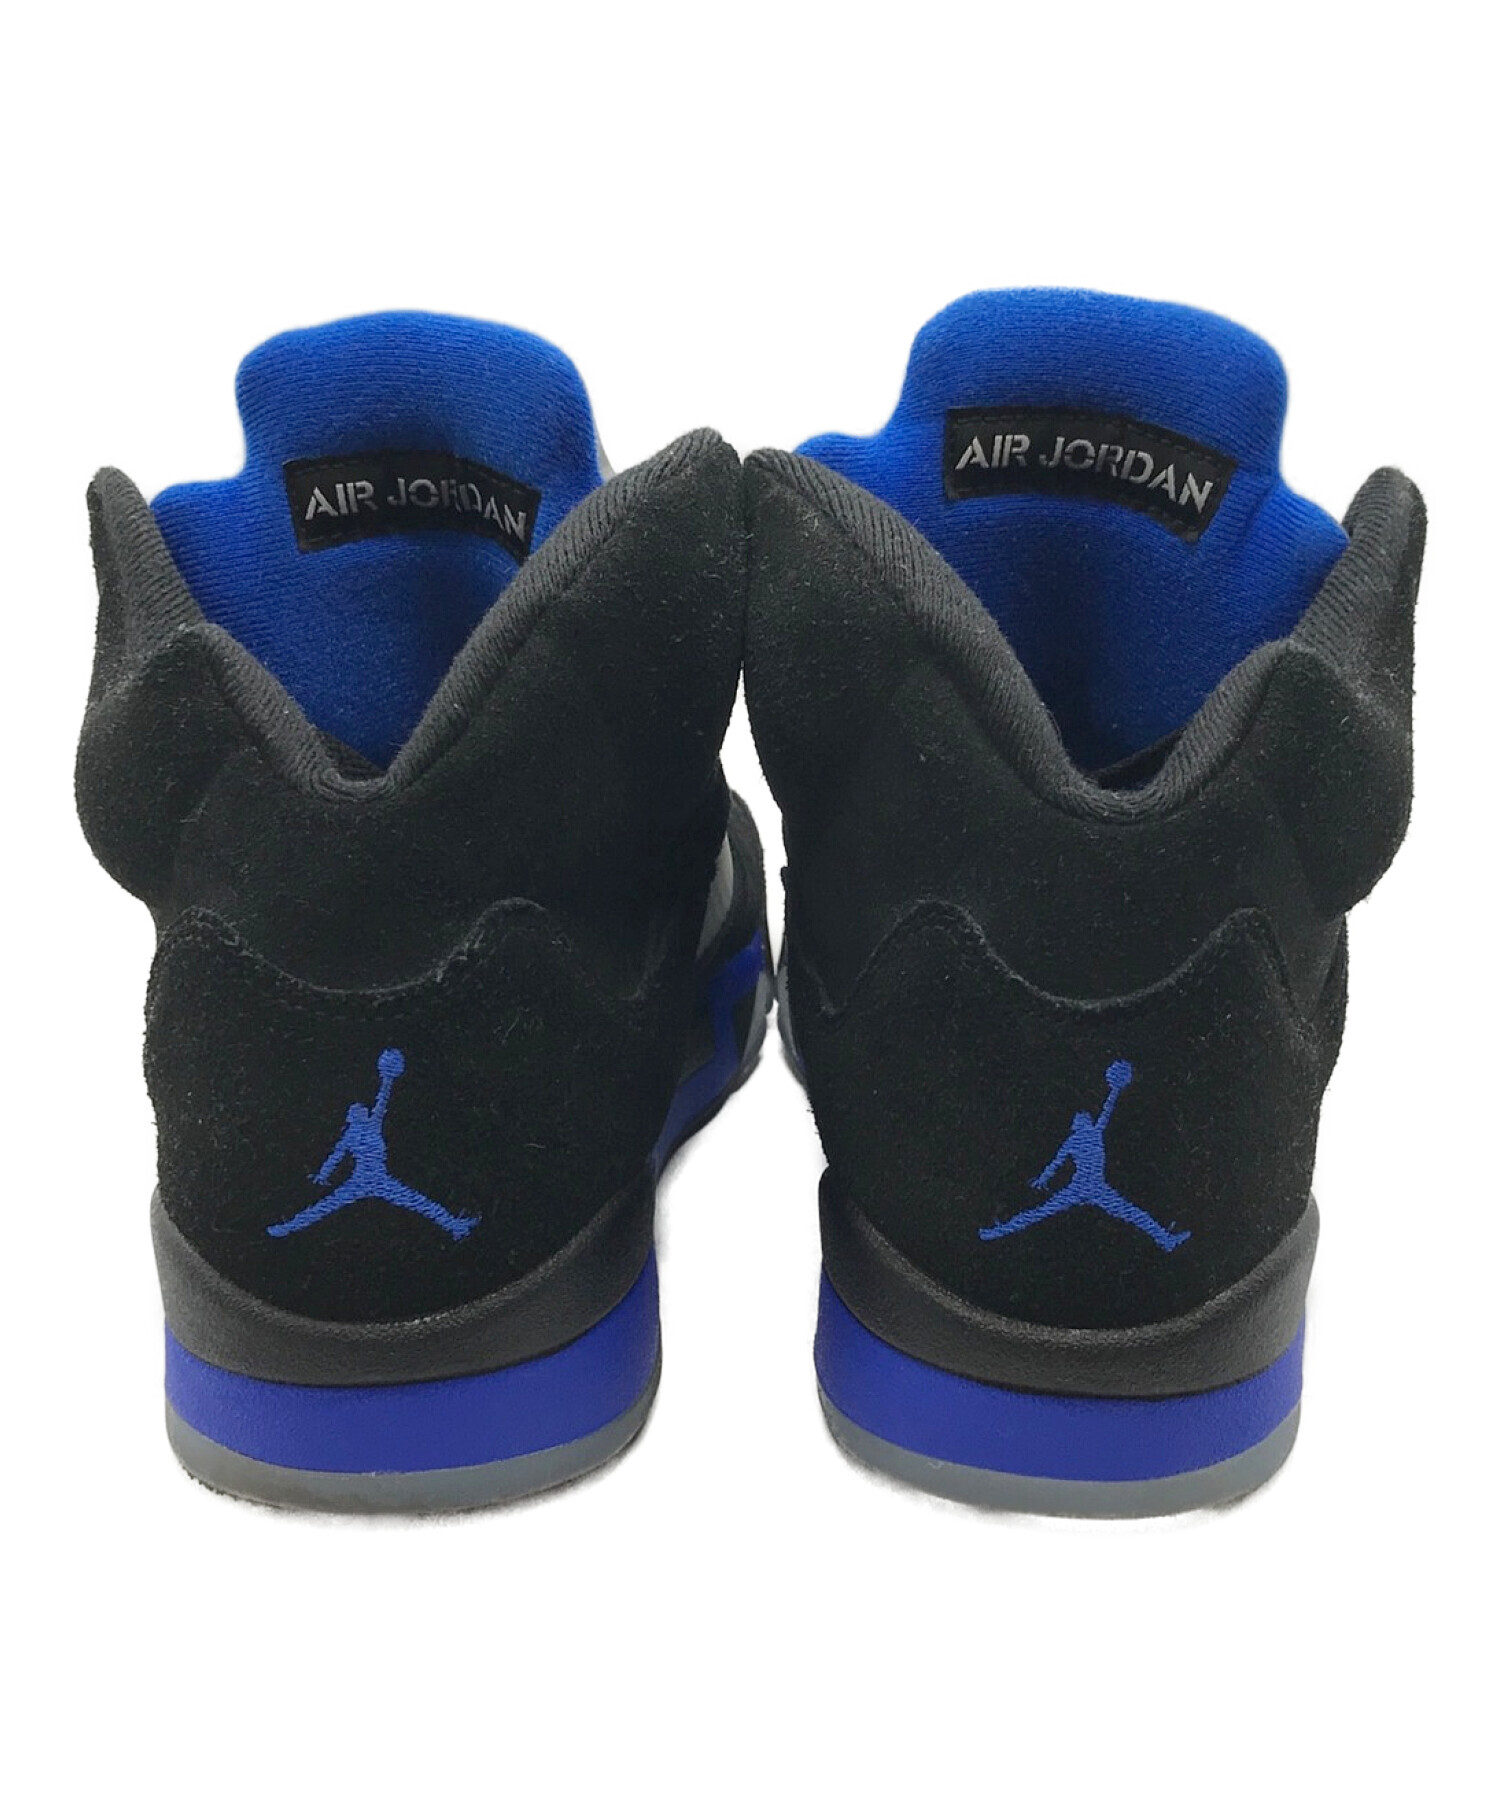 目立つ傷などはありません【SALE】Nike Air Jordan 5 Retro 27㎝